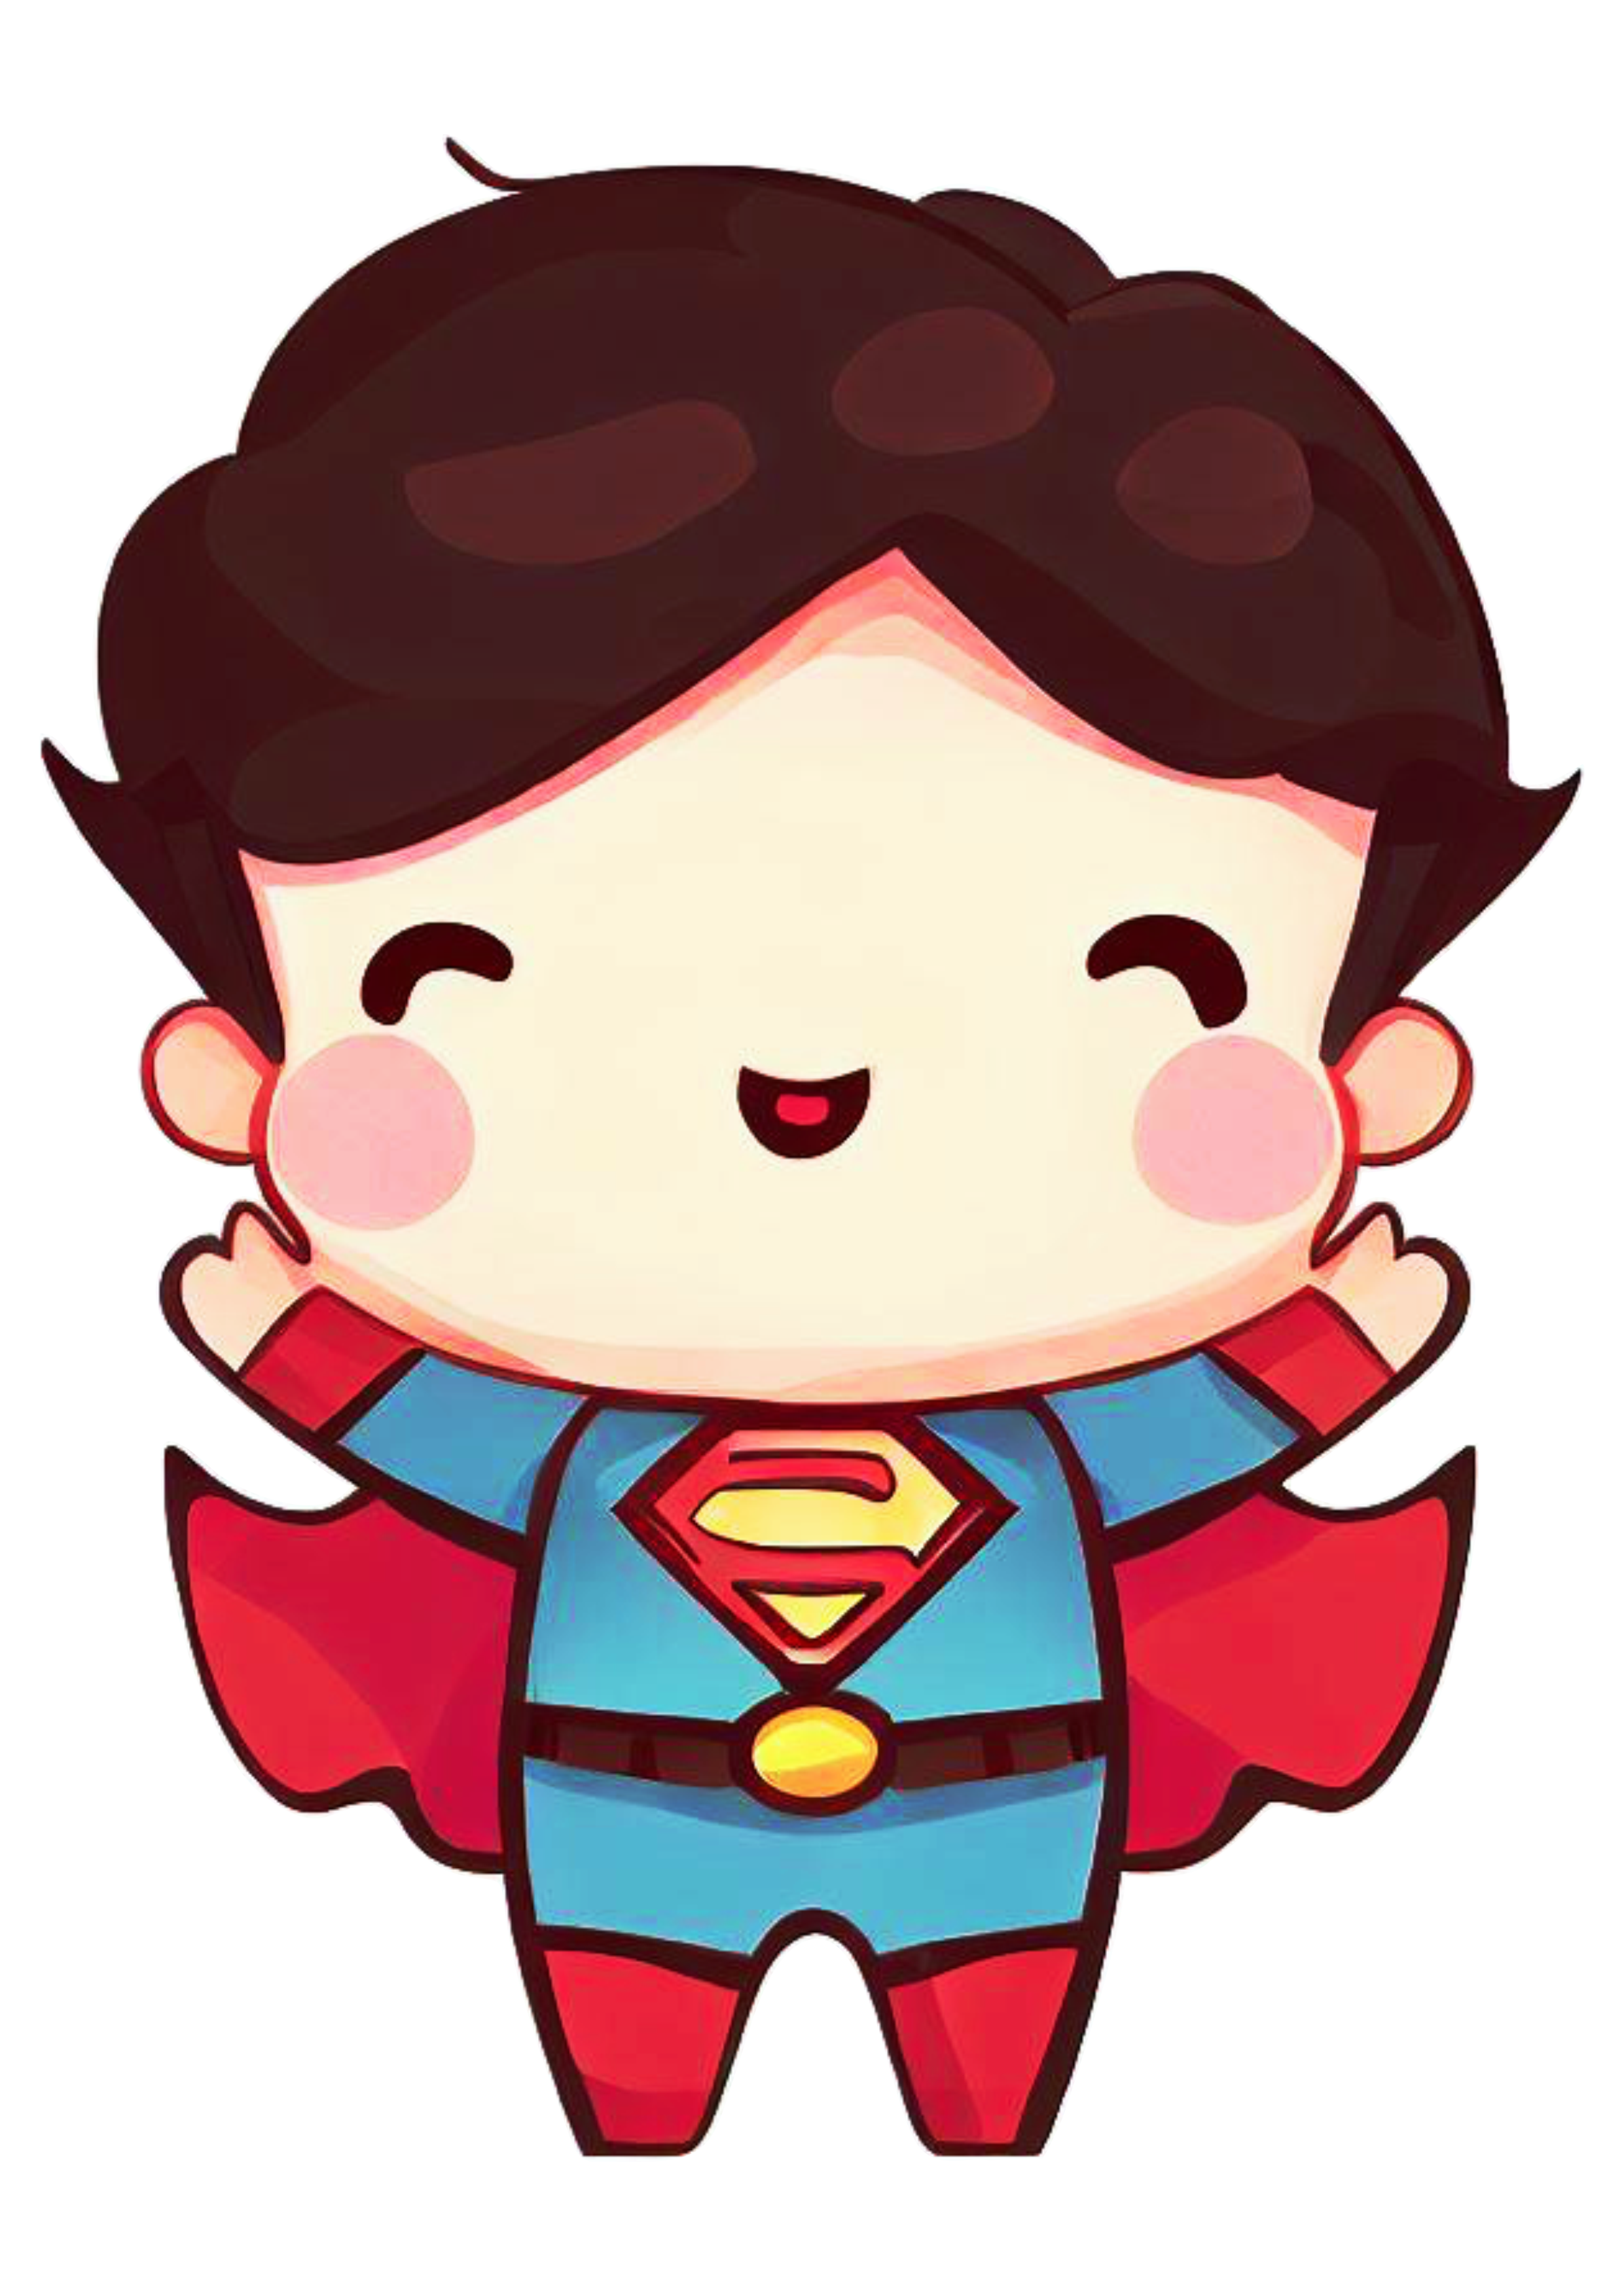 Super homem chibi fofinho cute superman heroi fantasia dc universe ilustração png